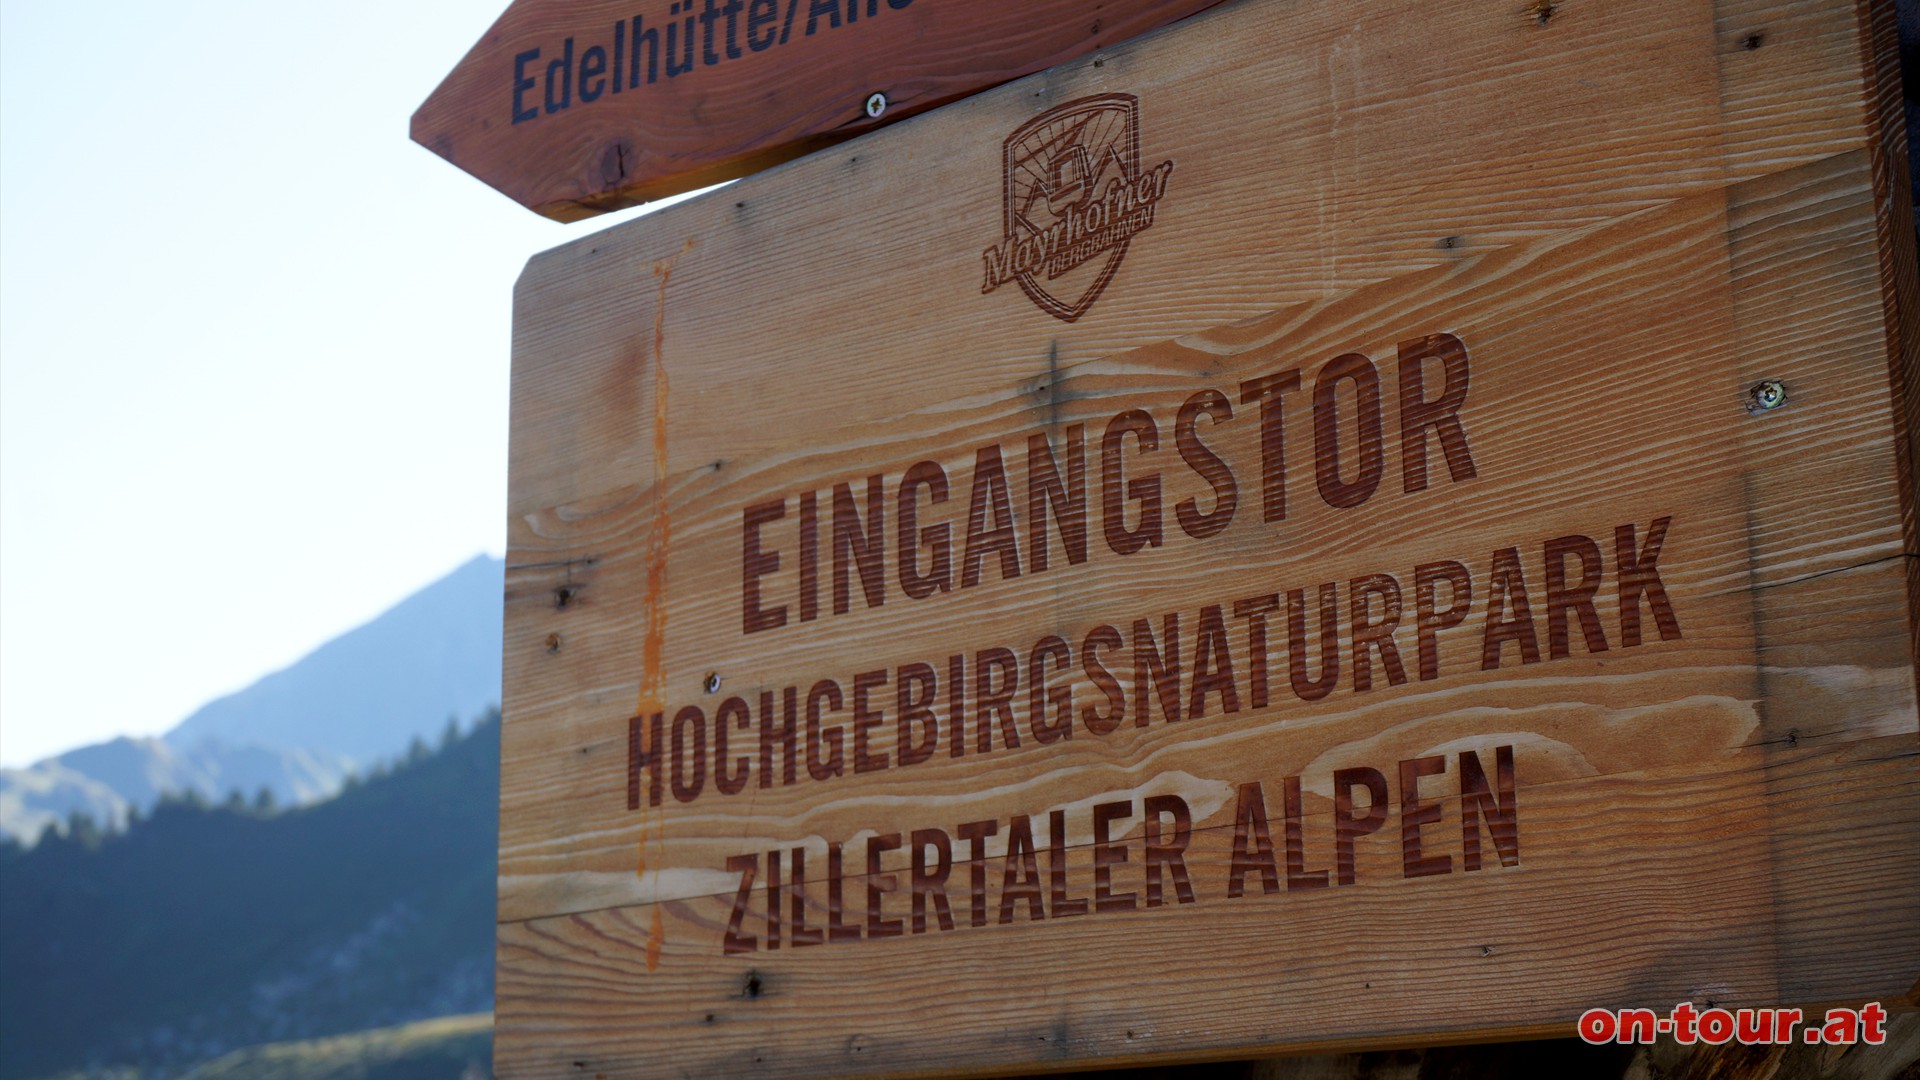 Hochoffiziell passieren wir das Eingangstor zum -Hochgebirgsnaturpark Zillertaler Alpen-.